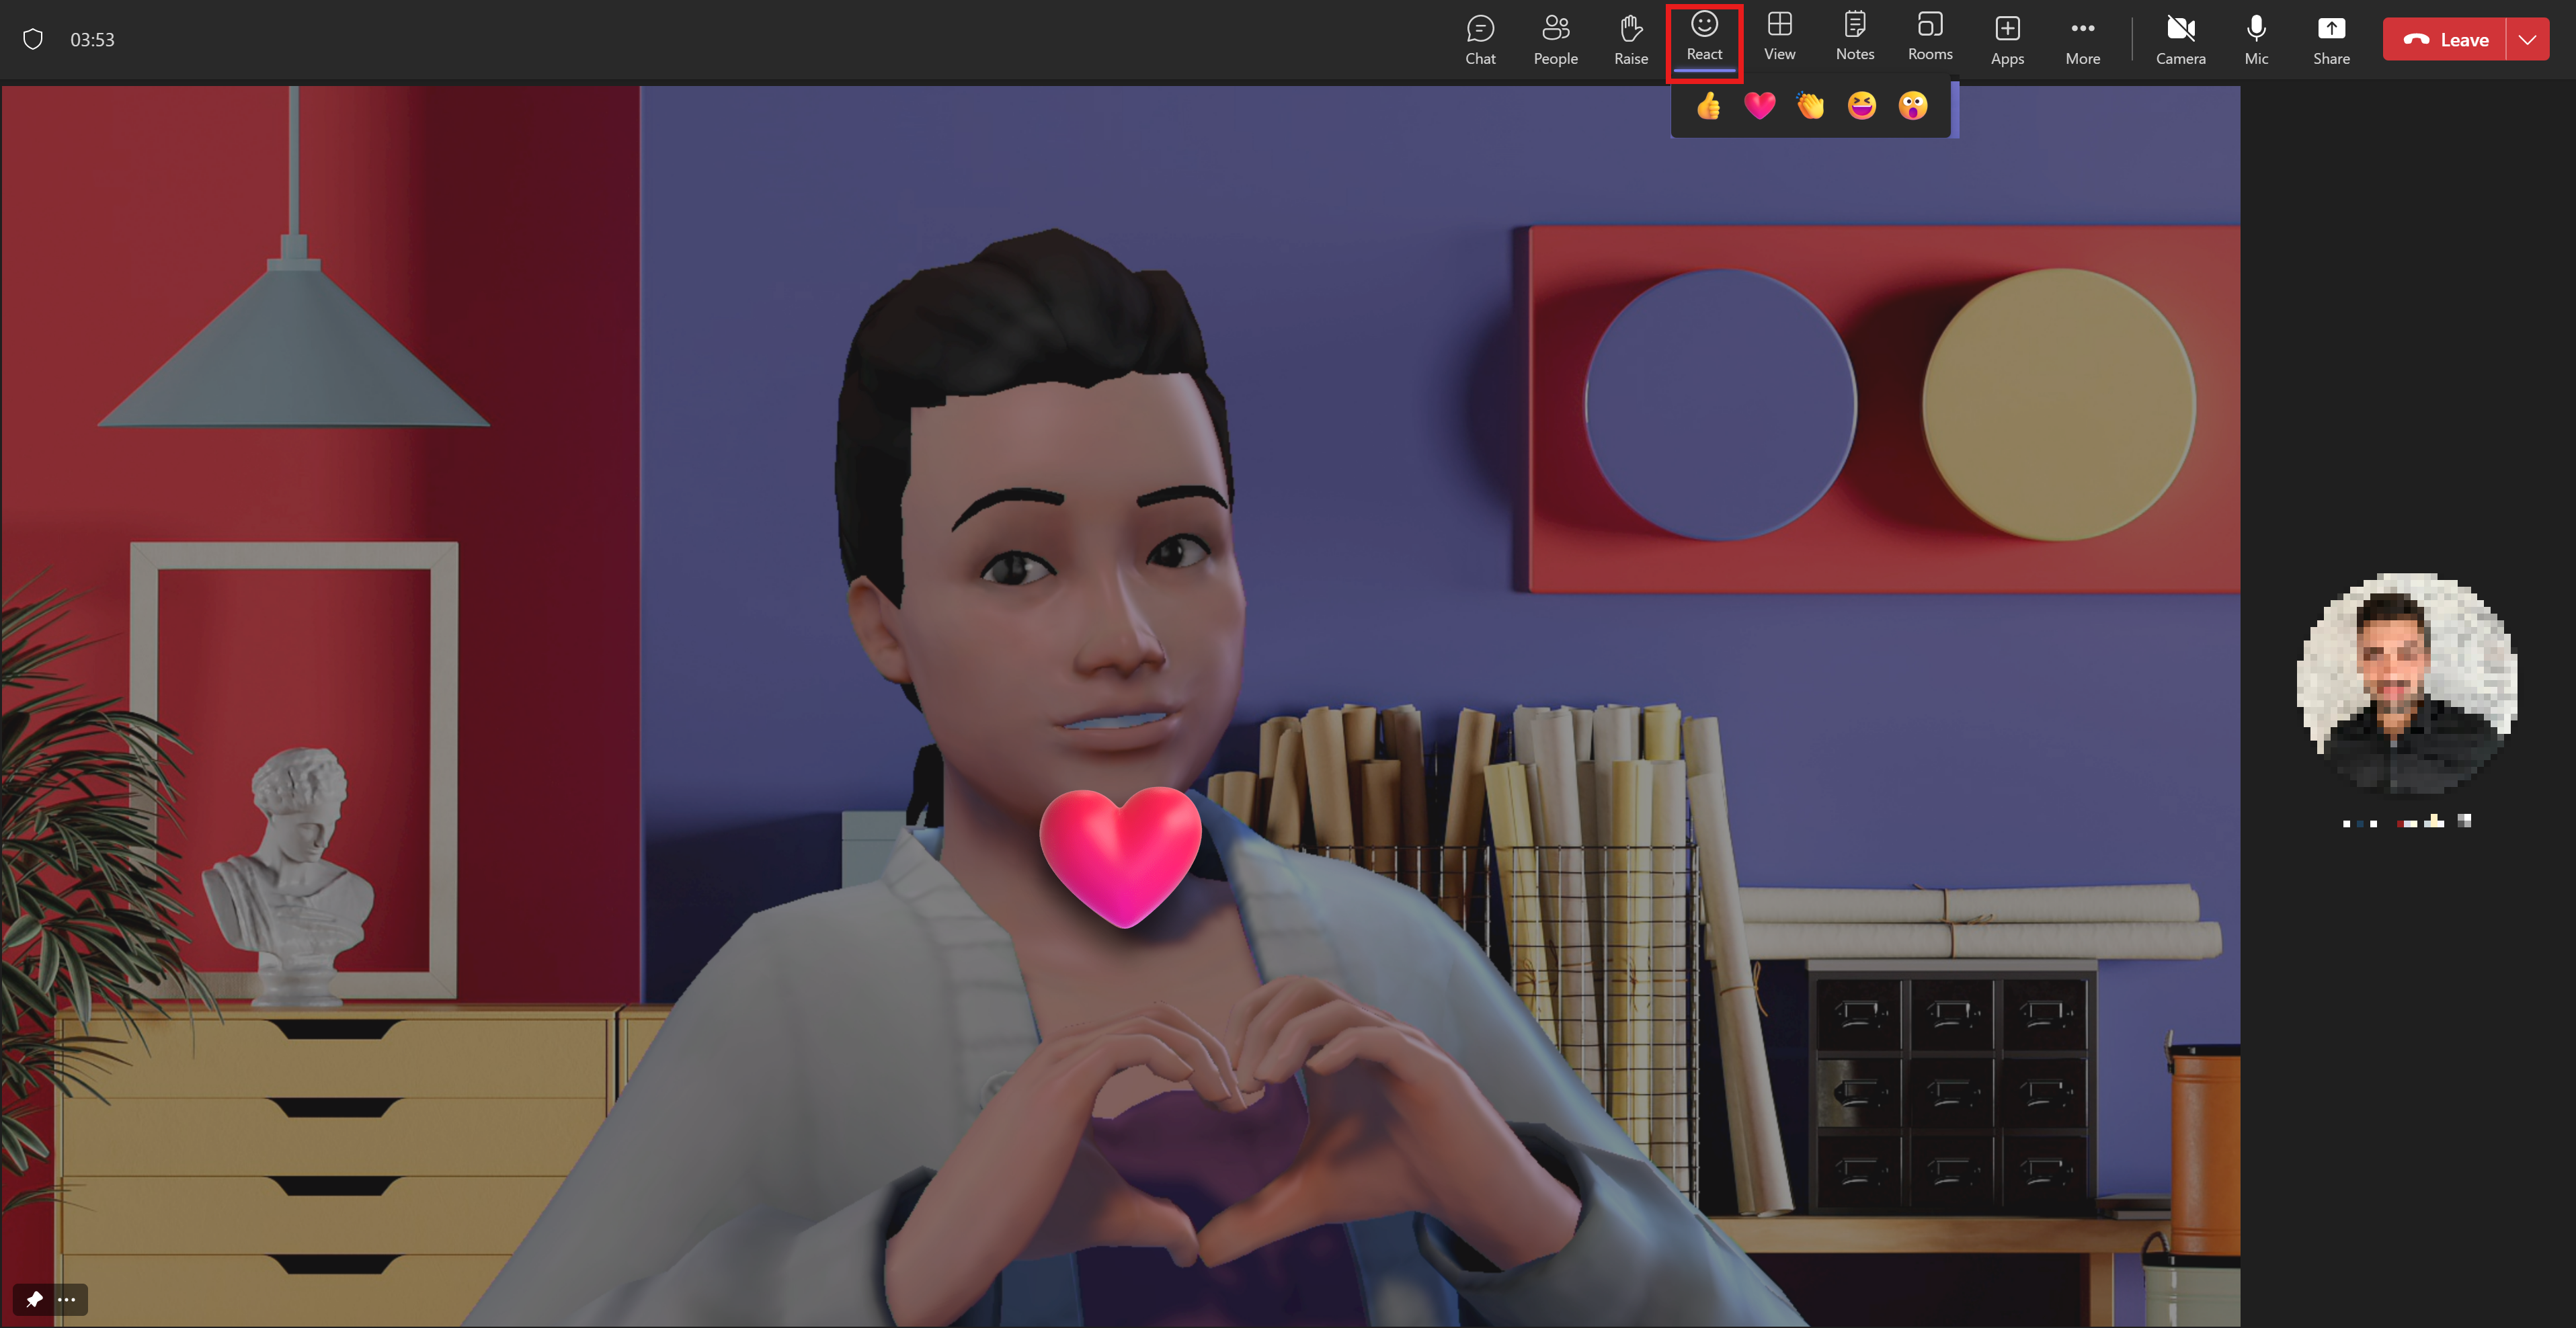 Аватар показує свою любов, роблячи серце руками